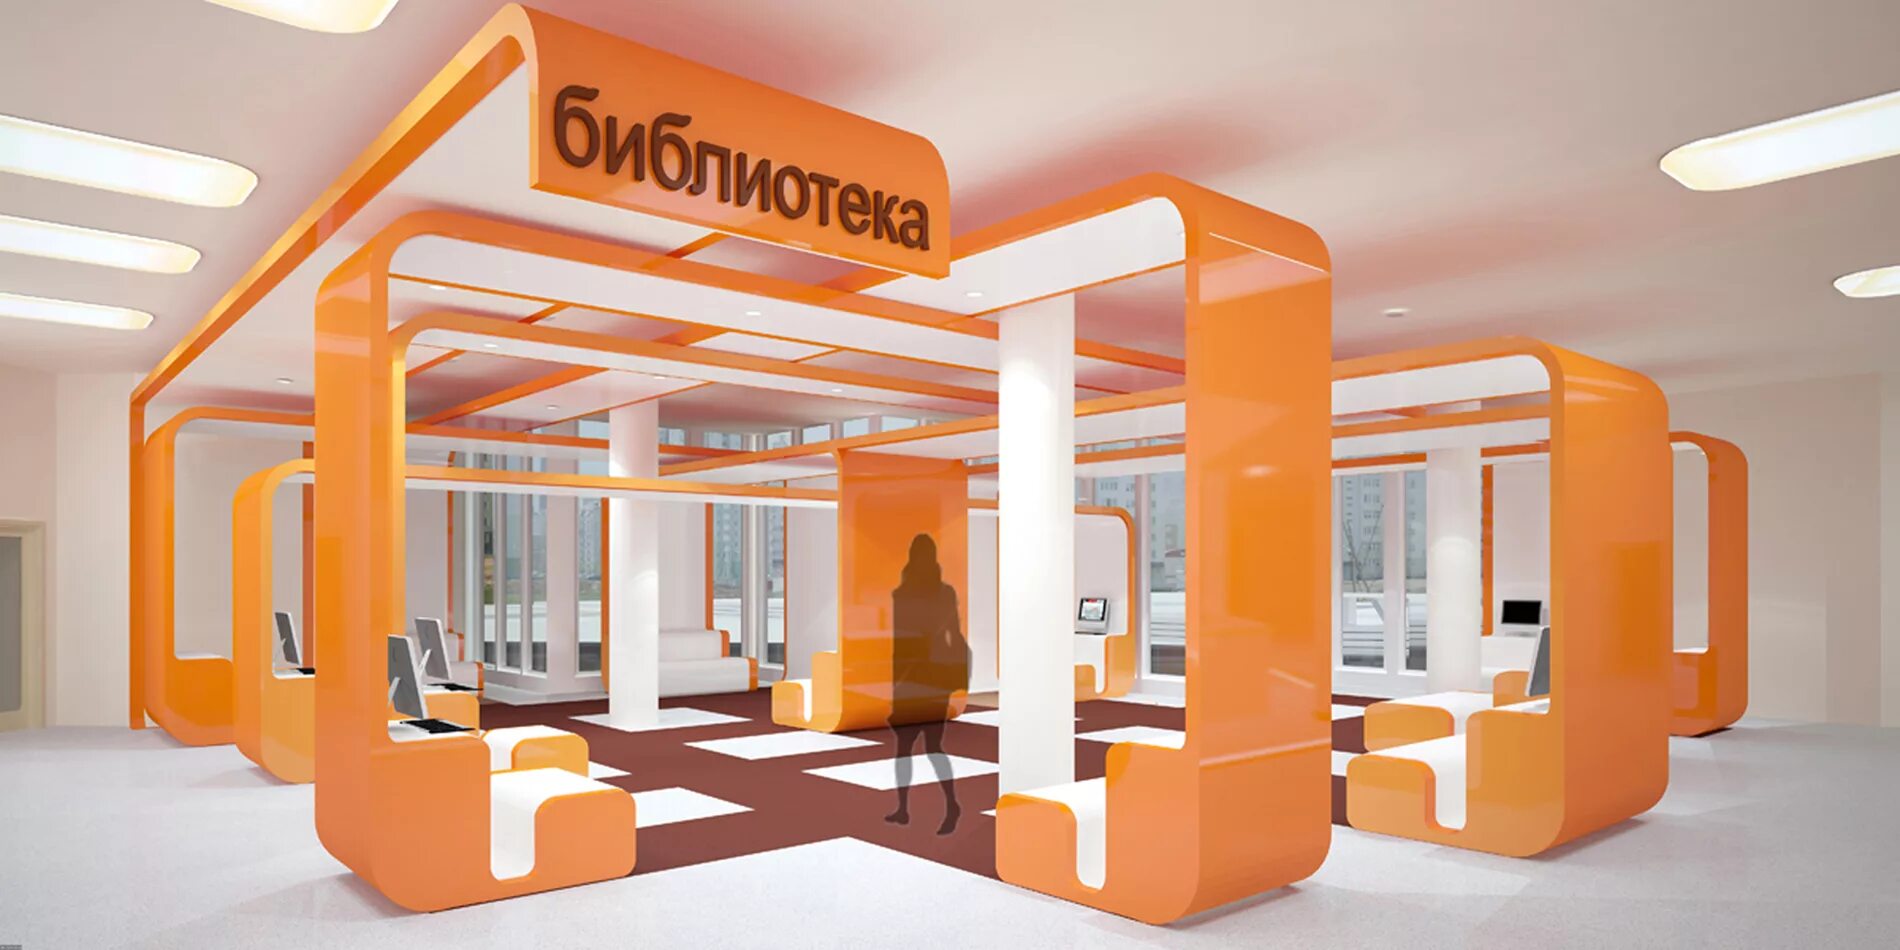 Интерьер школы будущего. Фойе библиотеки. Интерьер общественного здания в оранжевом цвете. Дизайн школы искусств.